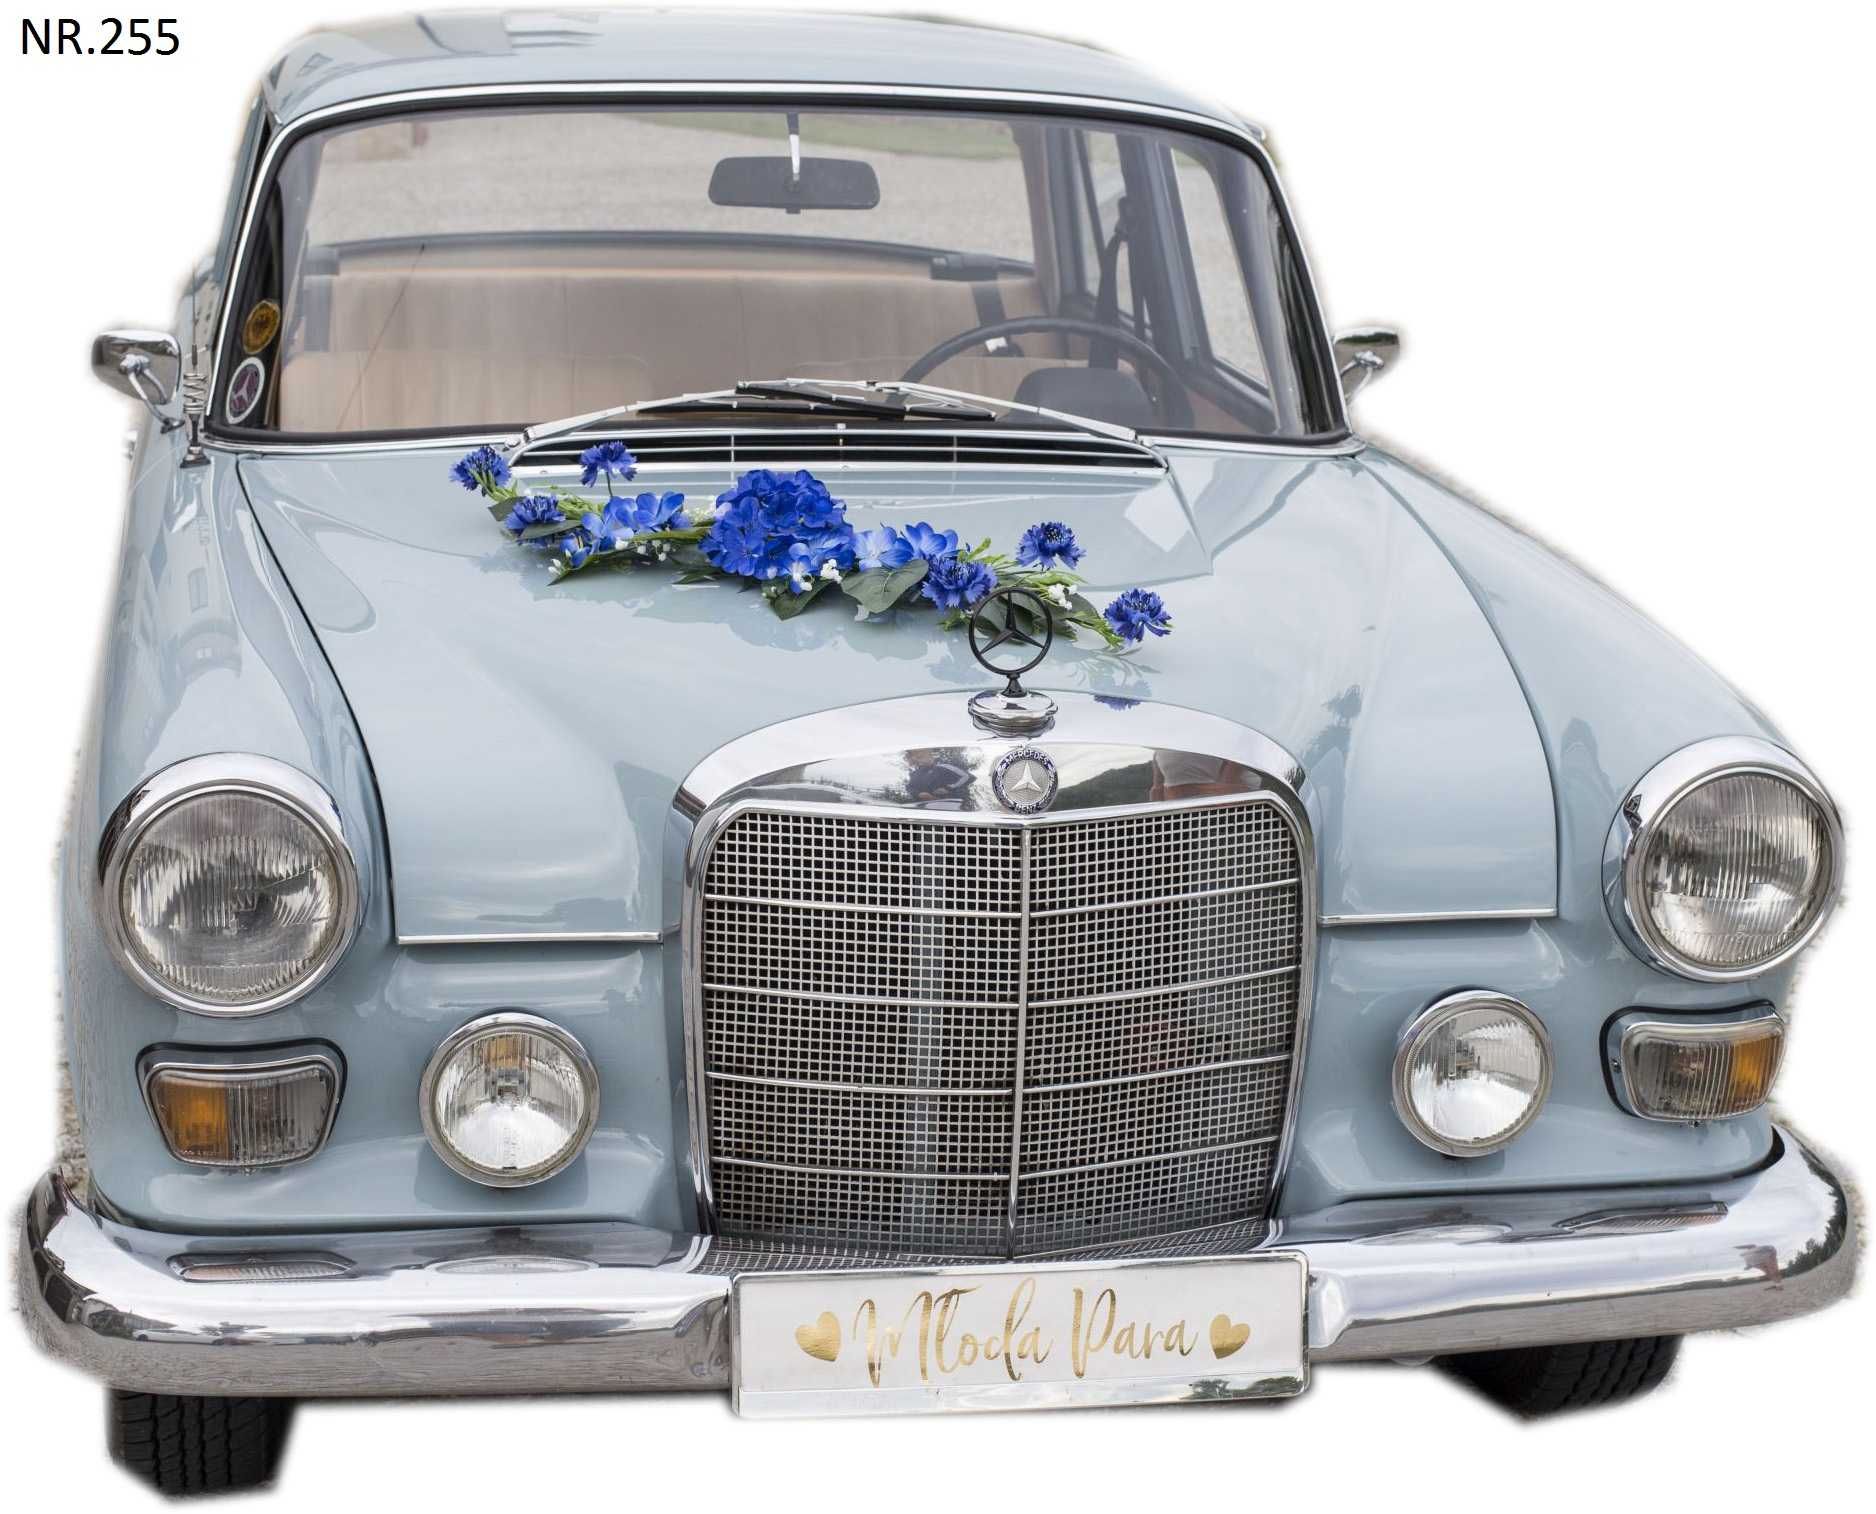 ŚLICZNA niepowtarzalna CHABROWA ozdoba dekoracja samochód ślubny 255